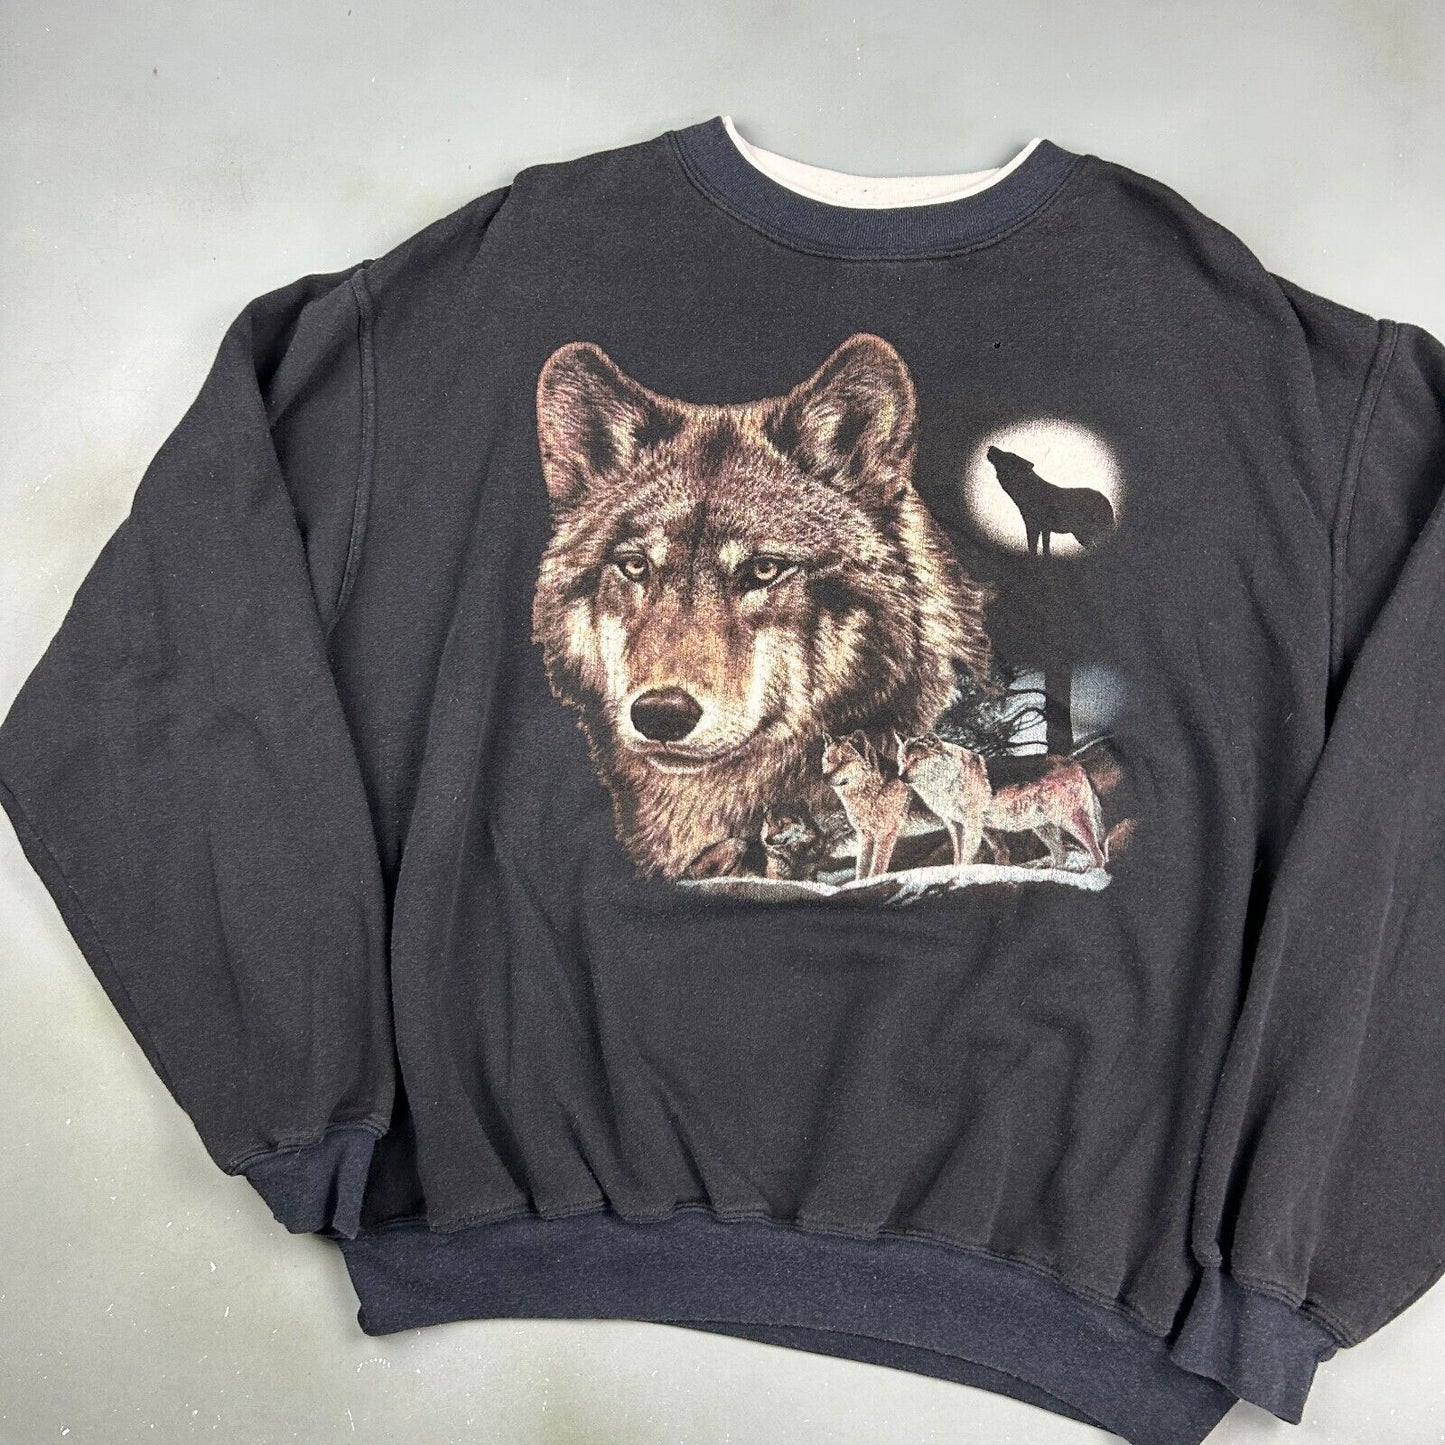 VINTAGE 90s Wolves Nature Graphic Black Crewneck Sweater sz Large Adult